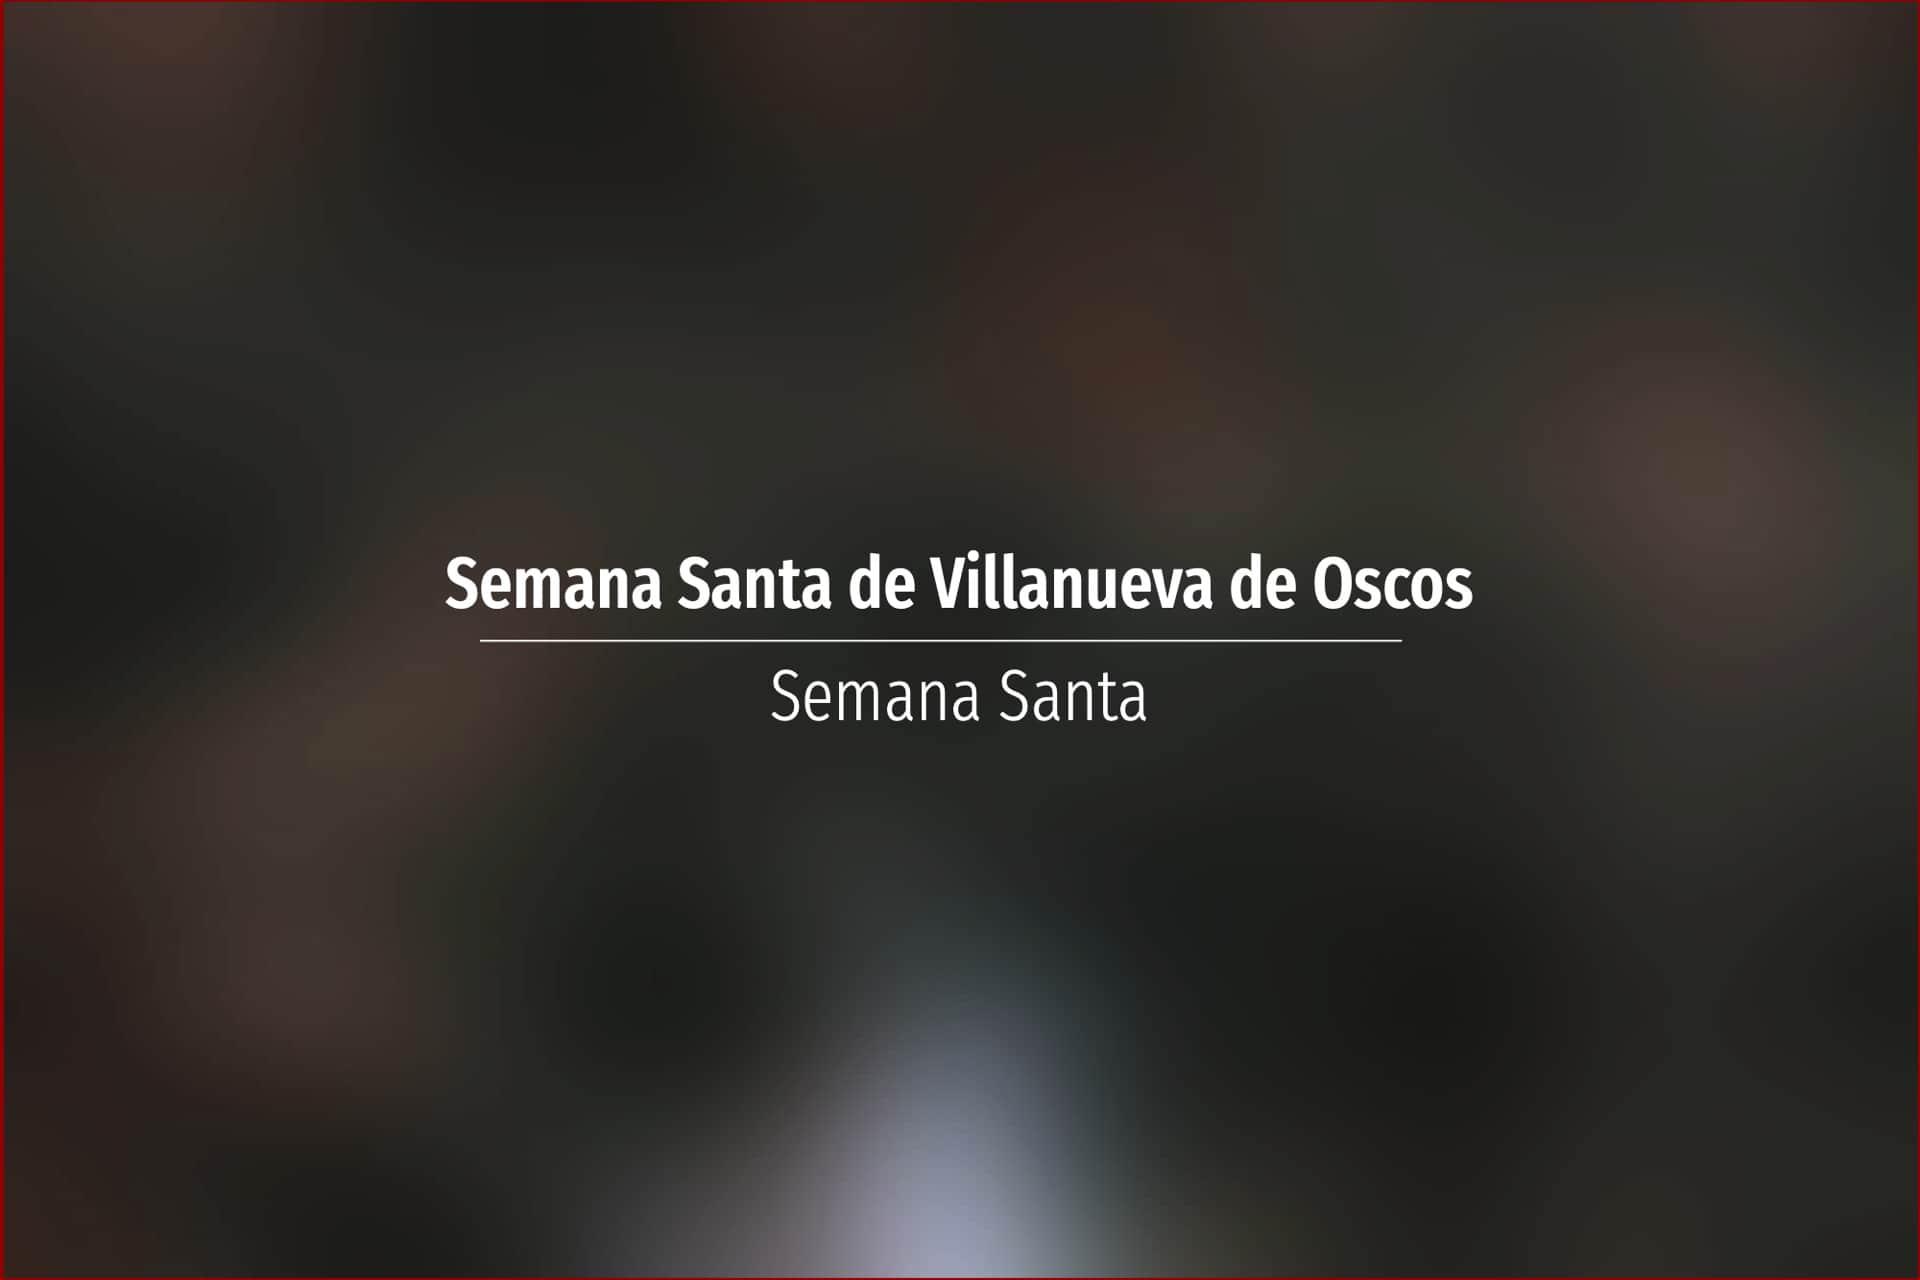 Semana Santa de Villanueva de Oscos